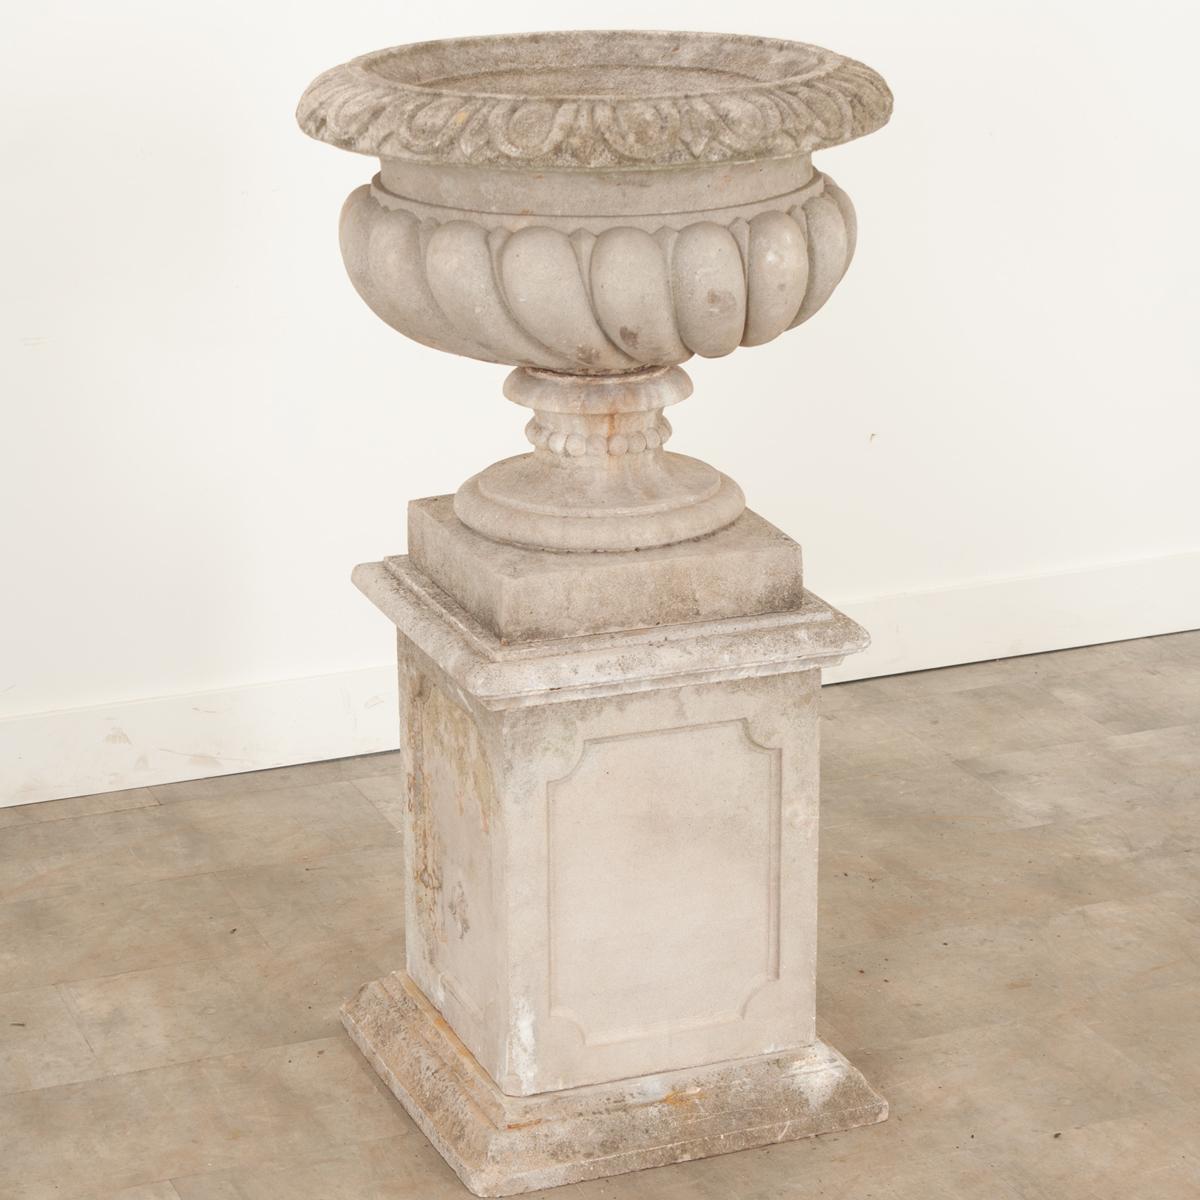 Hand-Crafted English Raised Garden Urn on Pedestal